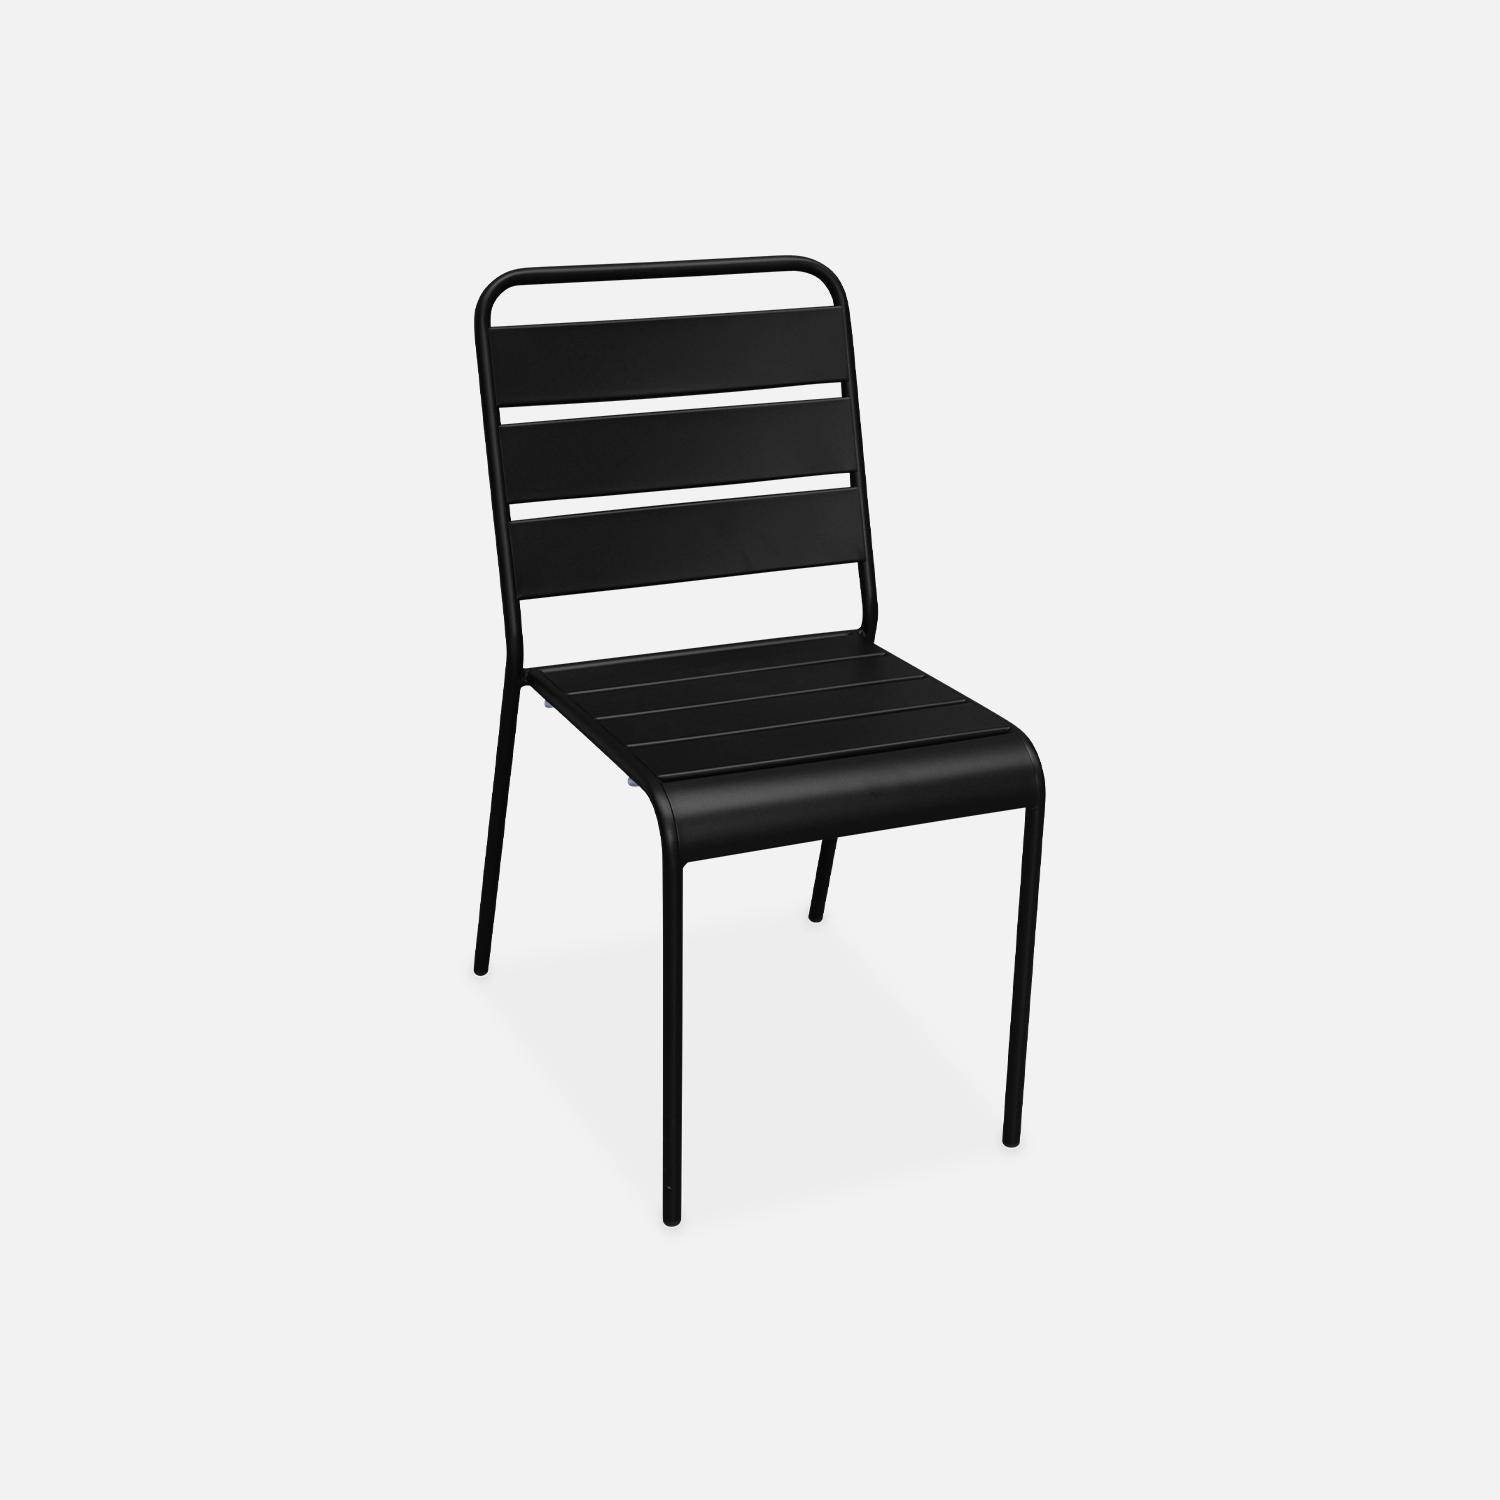 Lot de 4 chaises intérieur / extérieur en métal peinture antirouille empilables coloris noir,sweeek,Photo2